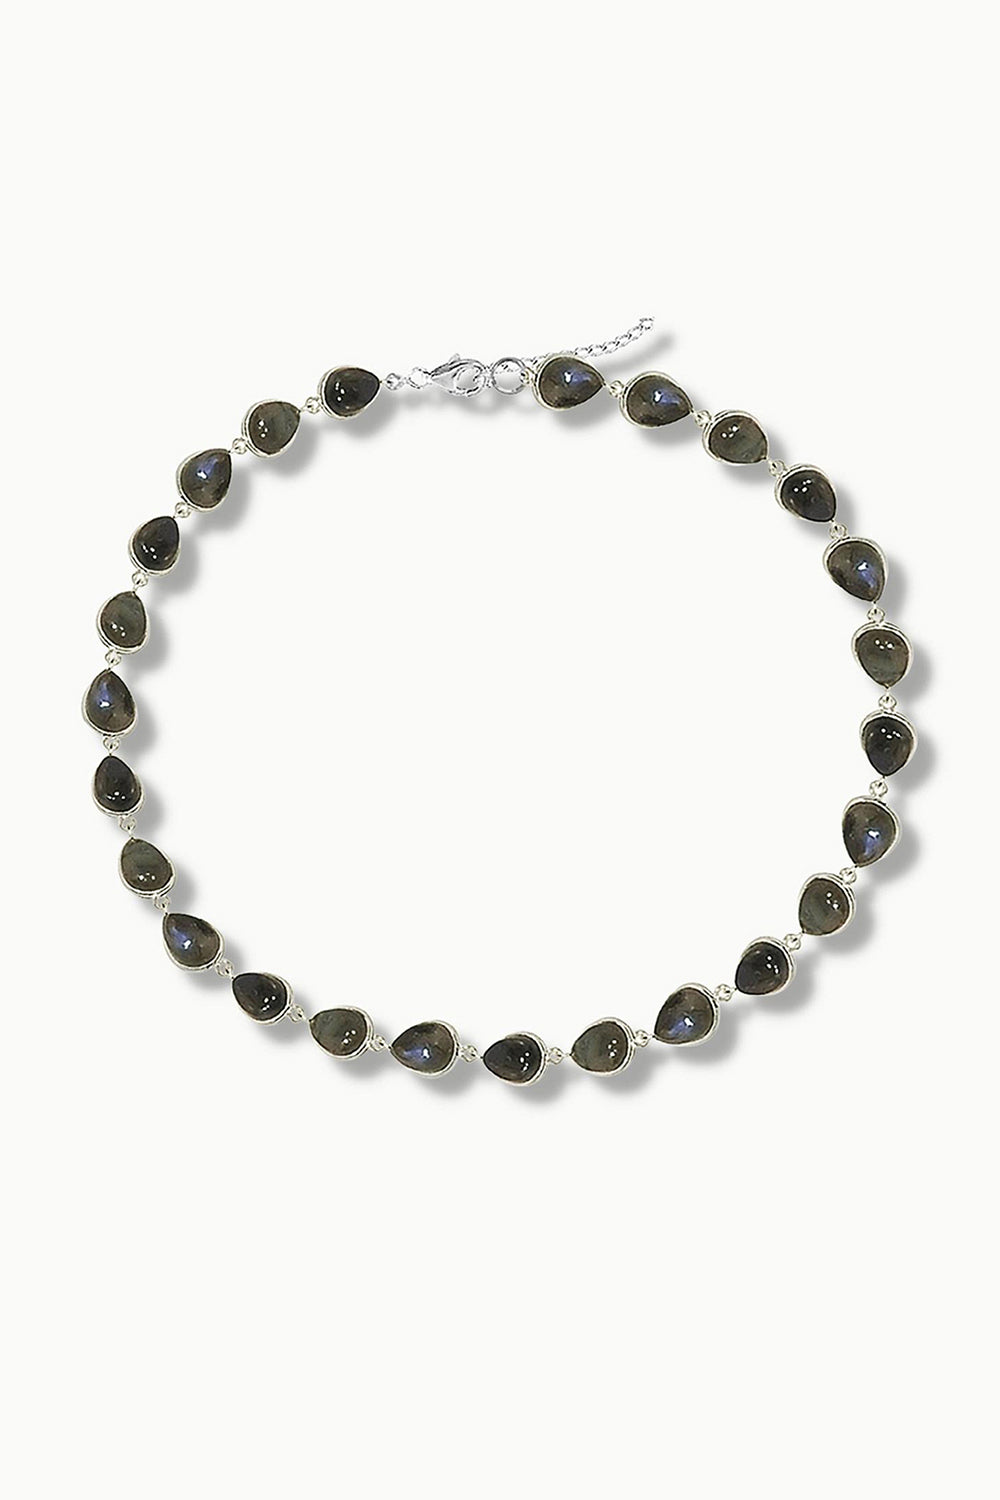 Labradorite Silver Necklace - Dew Drops